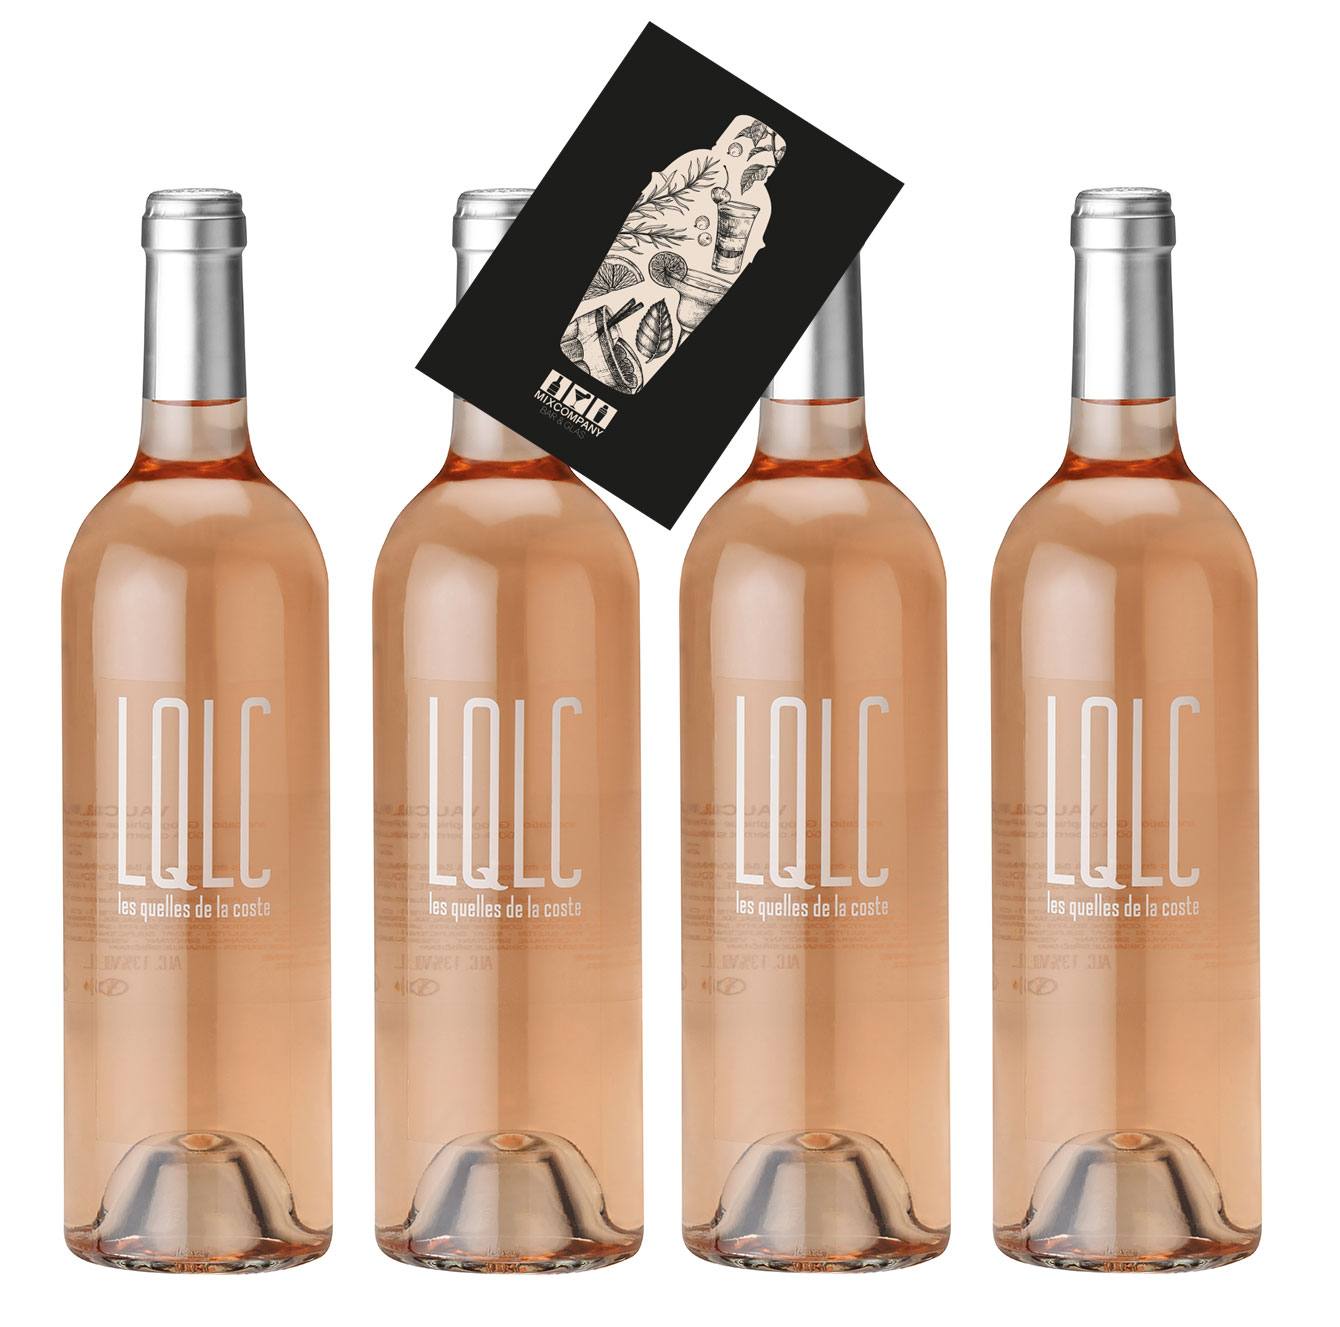 LQLC Rose 4er Set Wein 4x 0,75L (13% Vol) Les quelles de la coste rose von John Malkovich Frankreich Vaucluse trocken- [Enthält Sulfite]